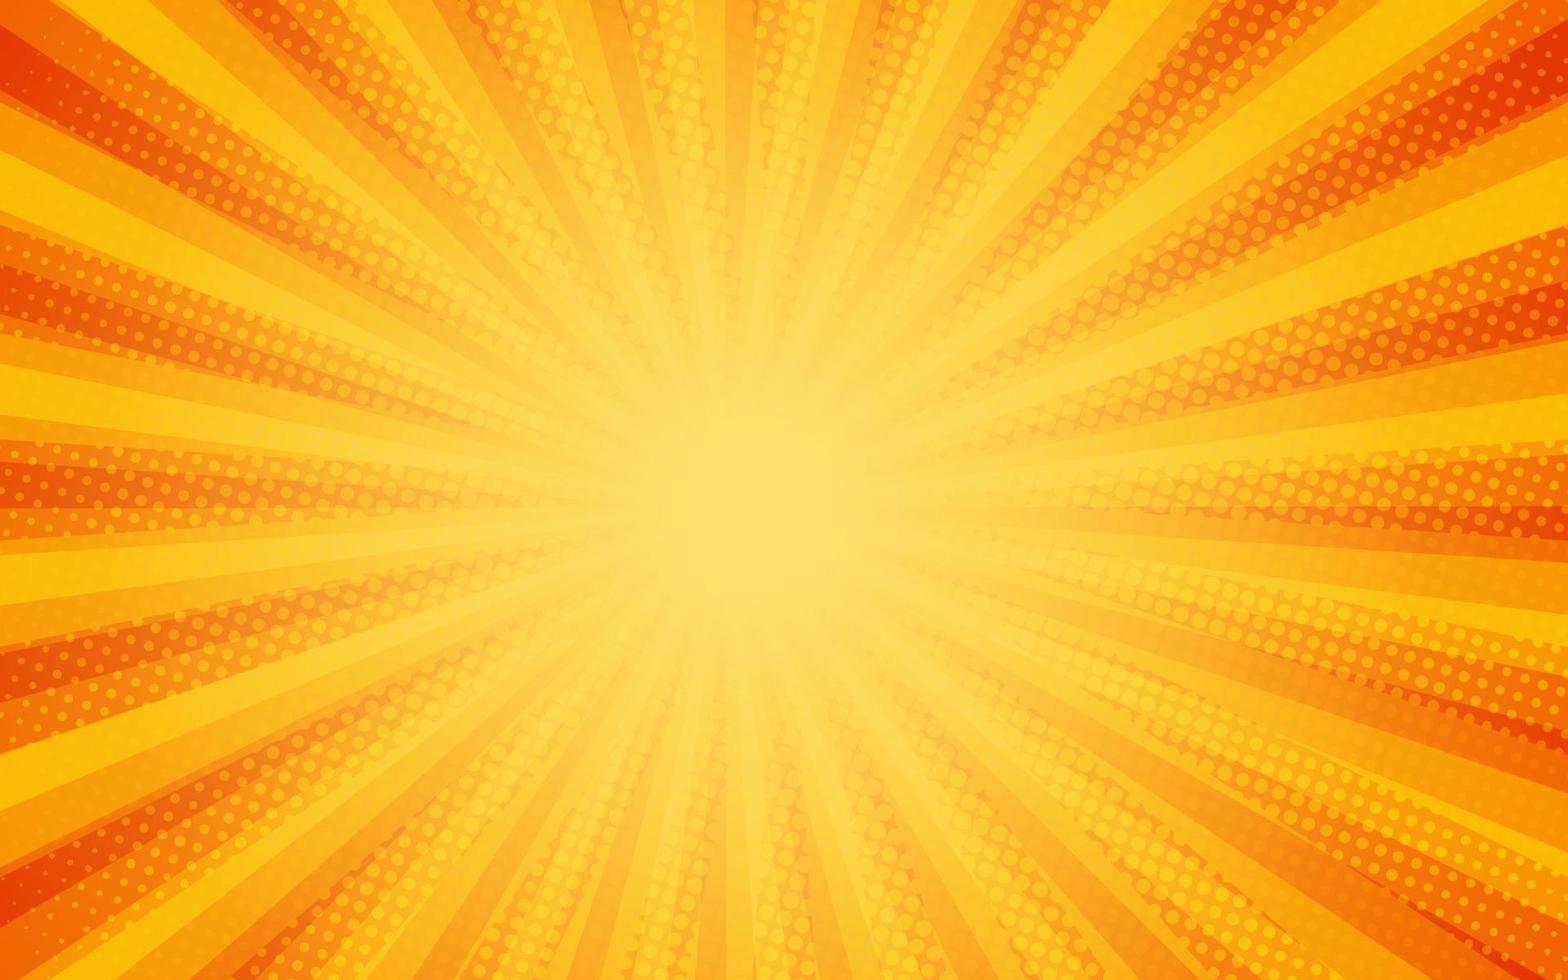 rayons de soleil style vintage rétro sur fond jaune et orange, motif comique avec starburst et demi-teintes. effet sunburst rétro de dessin animé avec des points. des rayons. illustration vectorielle de bannière d'été vecteur